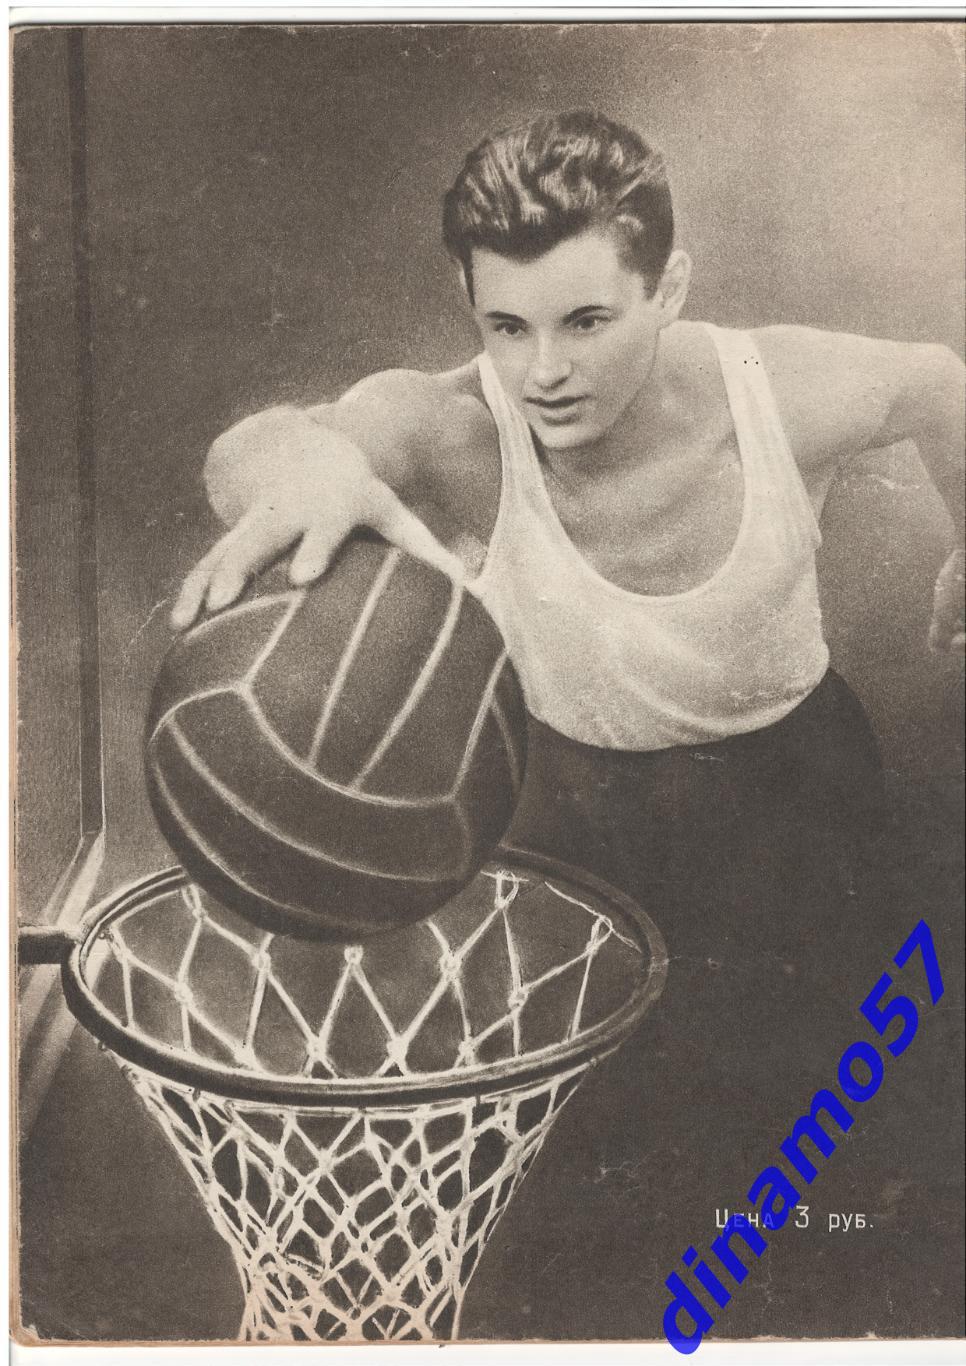 Журнал Спортивные игры№ 4 1957 1